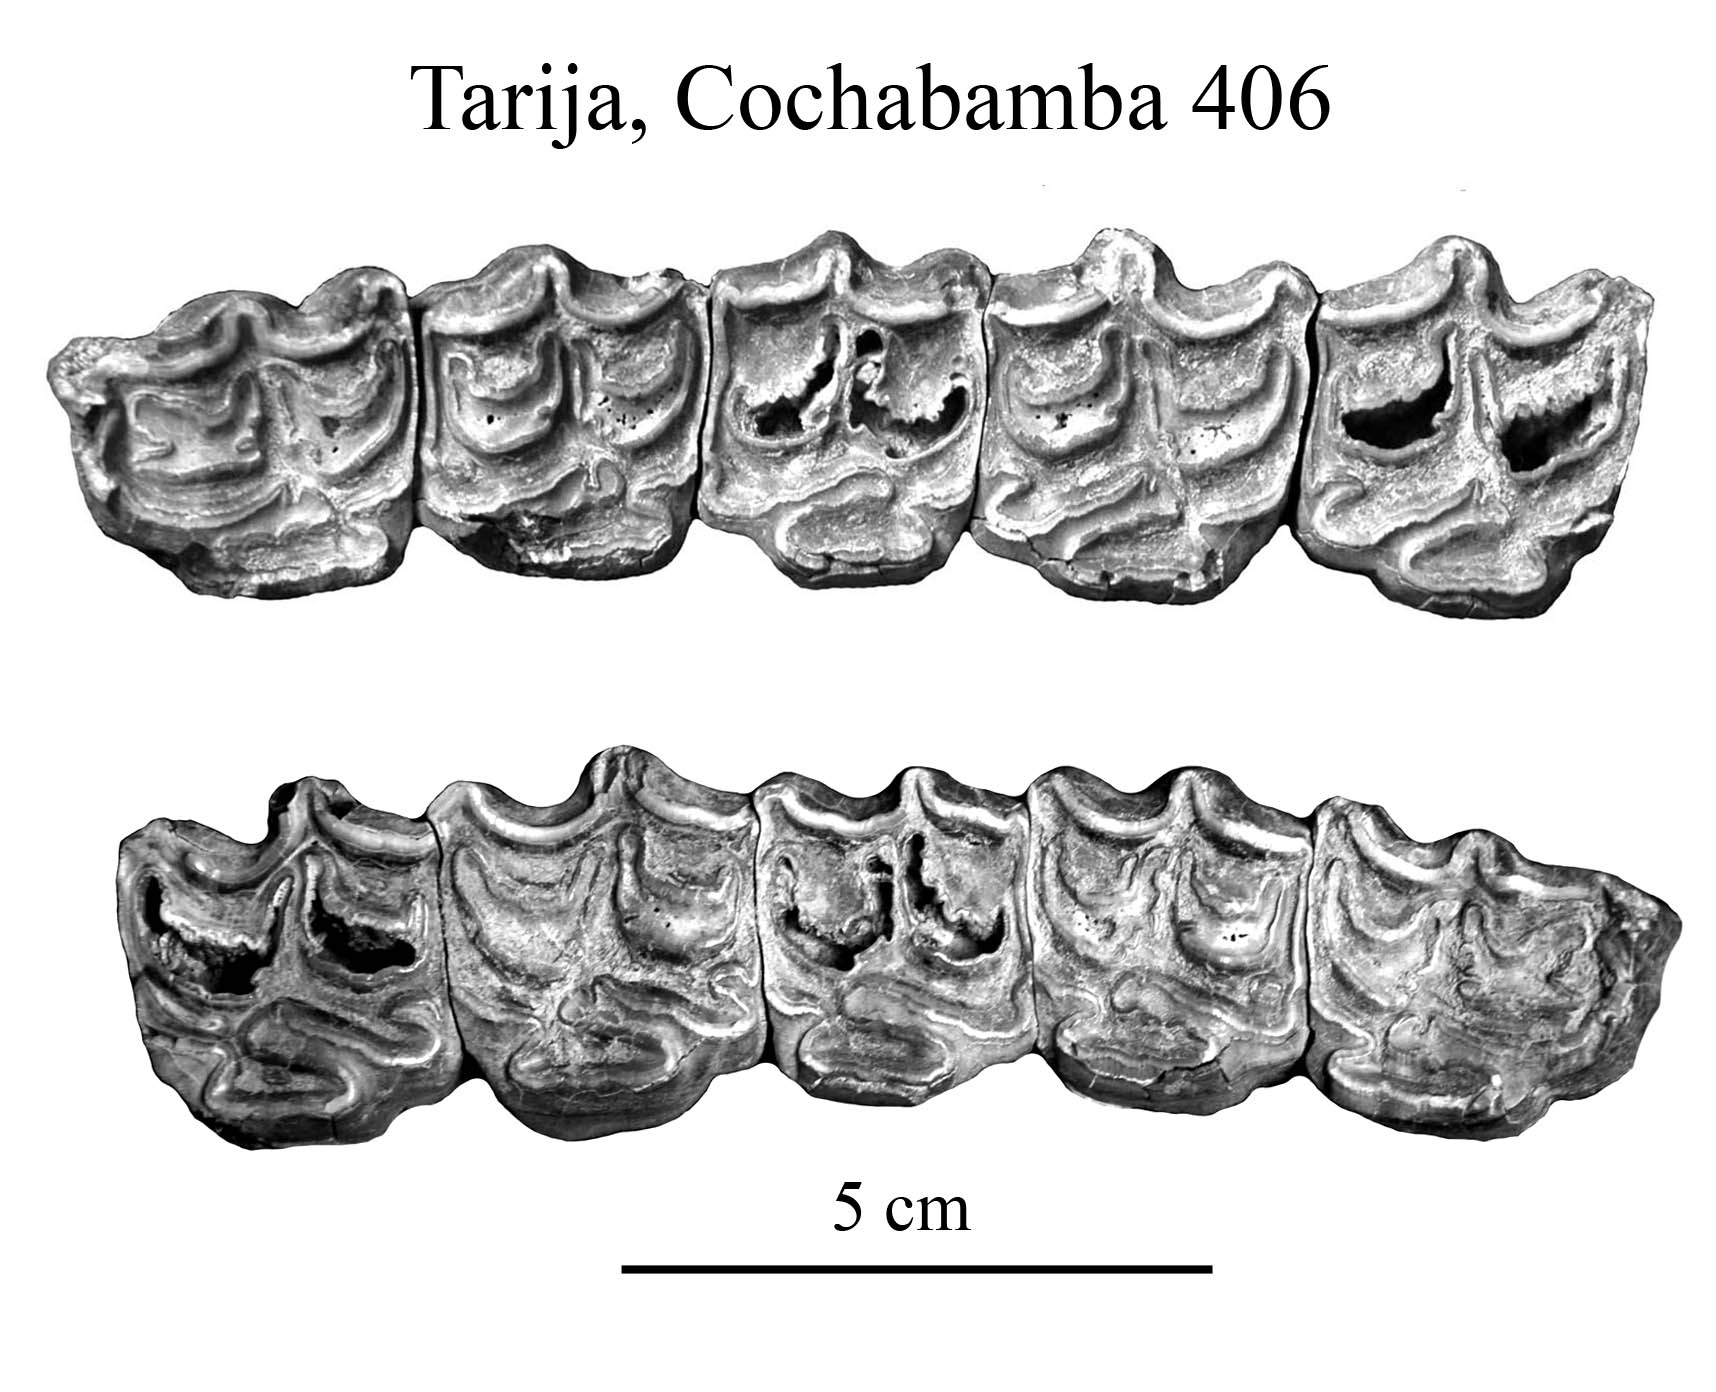 Tarija, Cochabamba 406, Upper Cheek Teeth